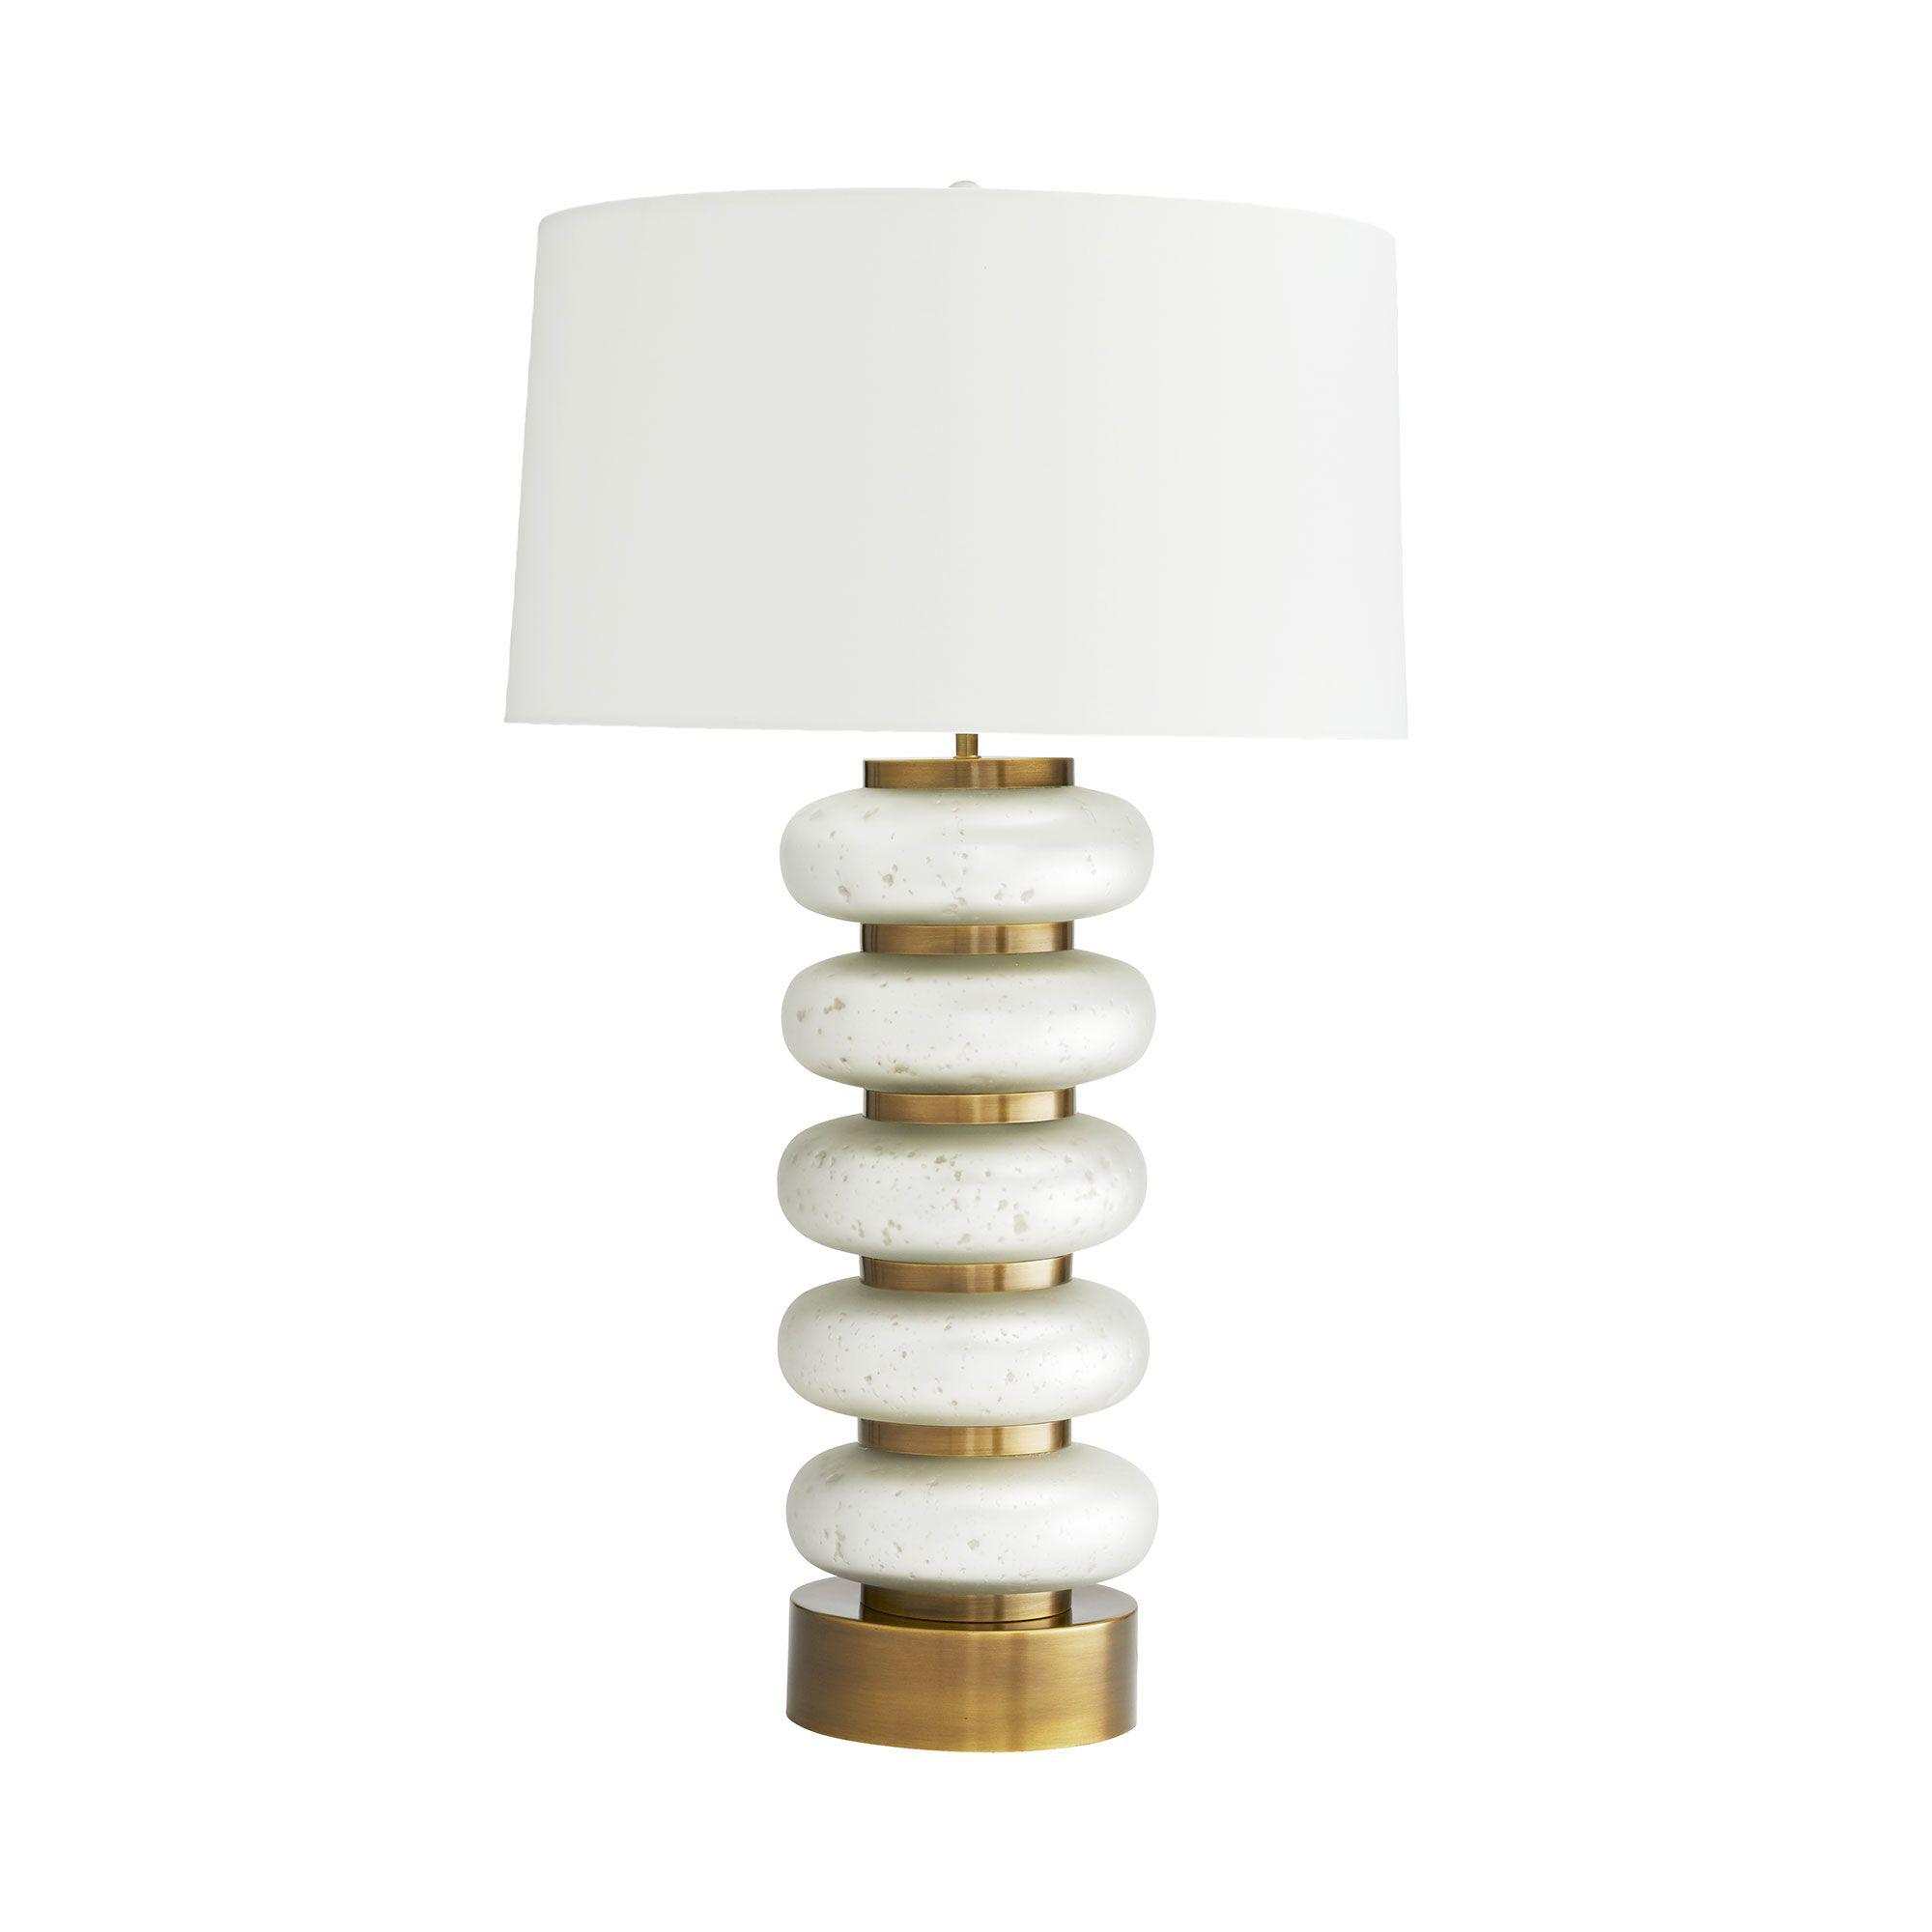 Купить Настольная лампа Gaelen Lamp в интернет-магазине roooms.ru